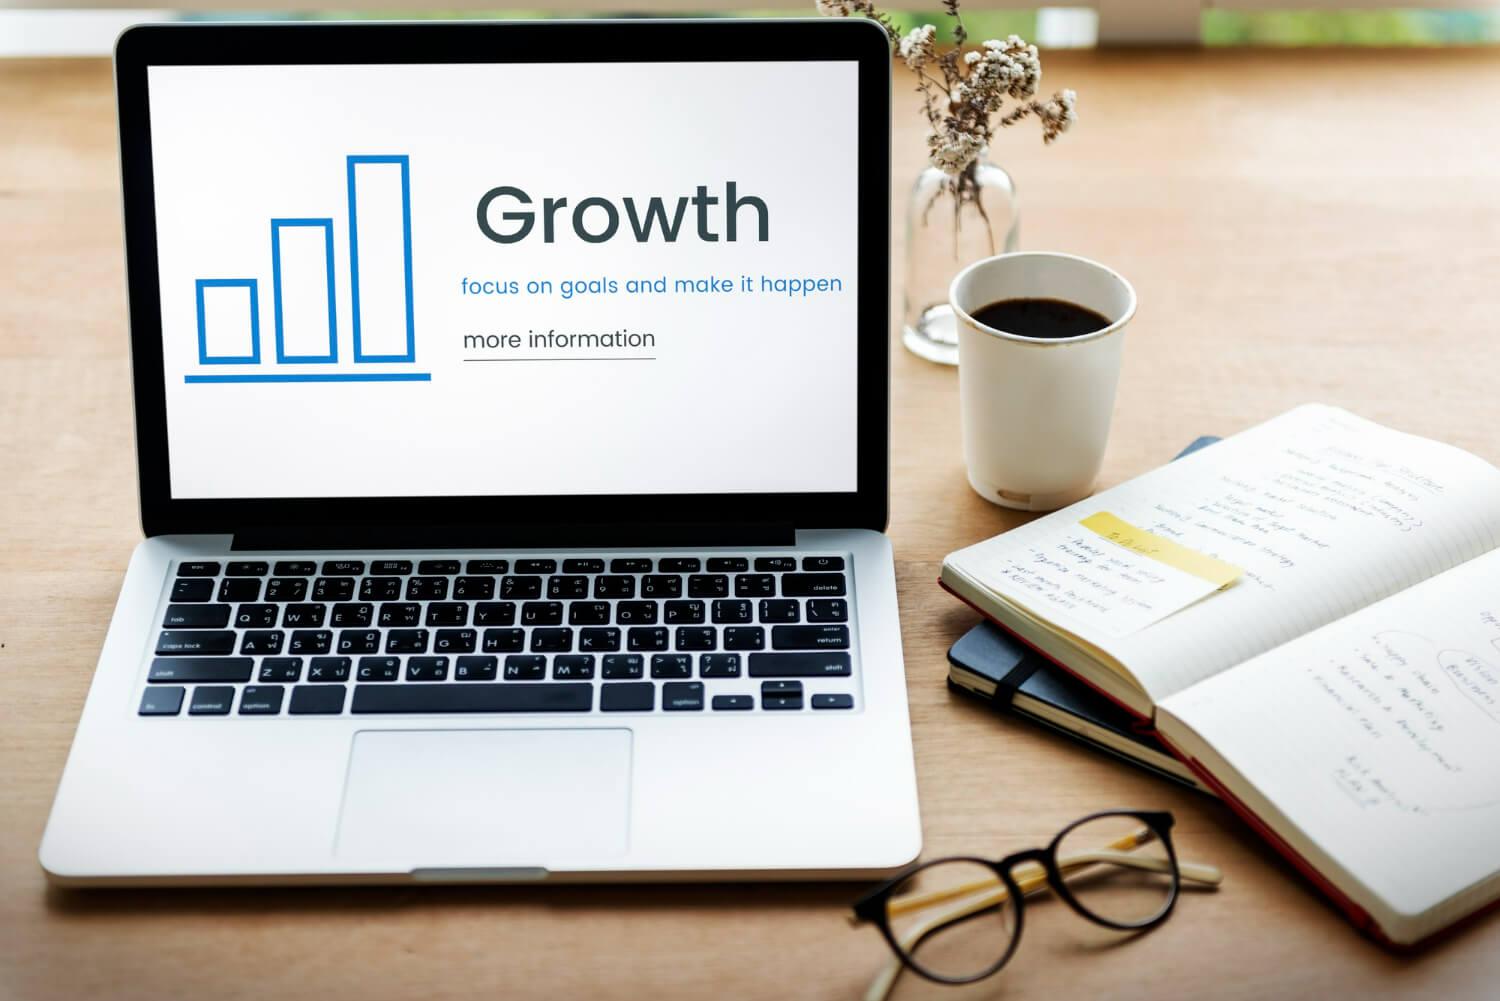 Groei stimuleren: laptopscherm geeft staafdiagram weer met 'groei'-tekst, omringd door bril, notitieboekje en kopje koffie